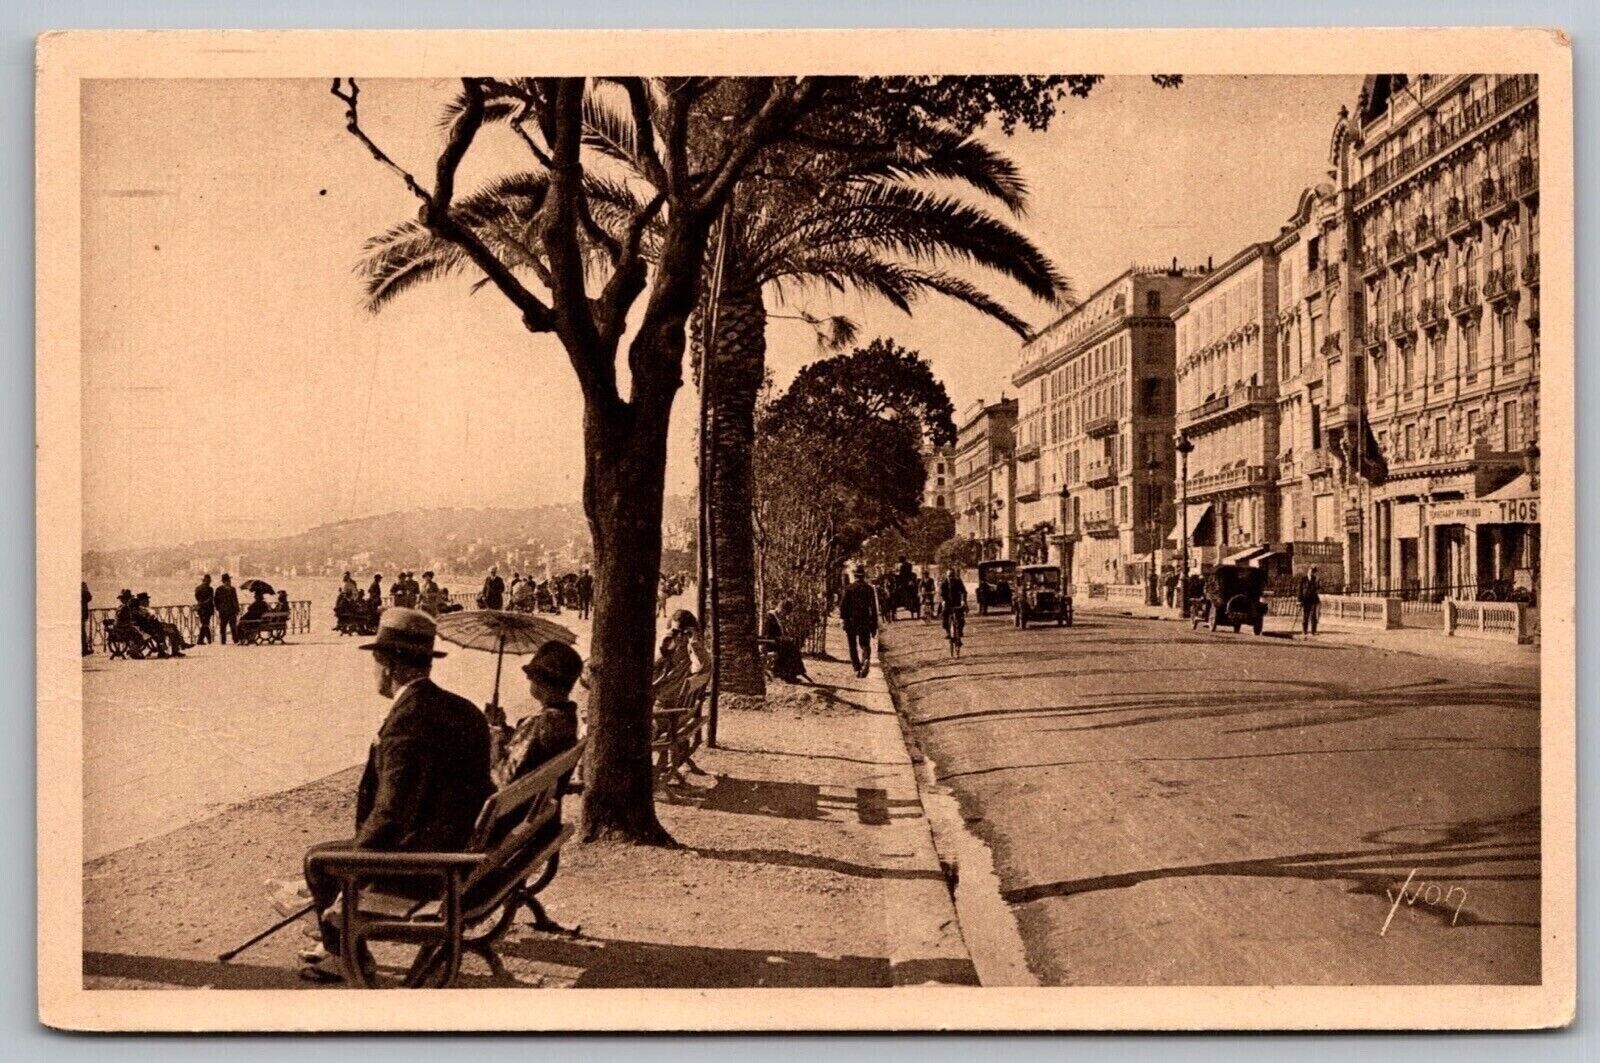 La Douce France Promenade Des Anglais Postcard